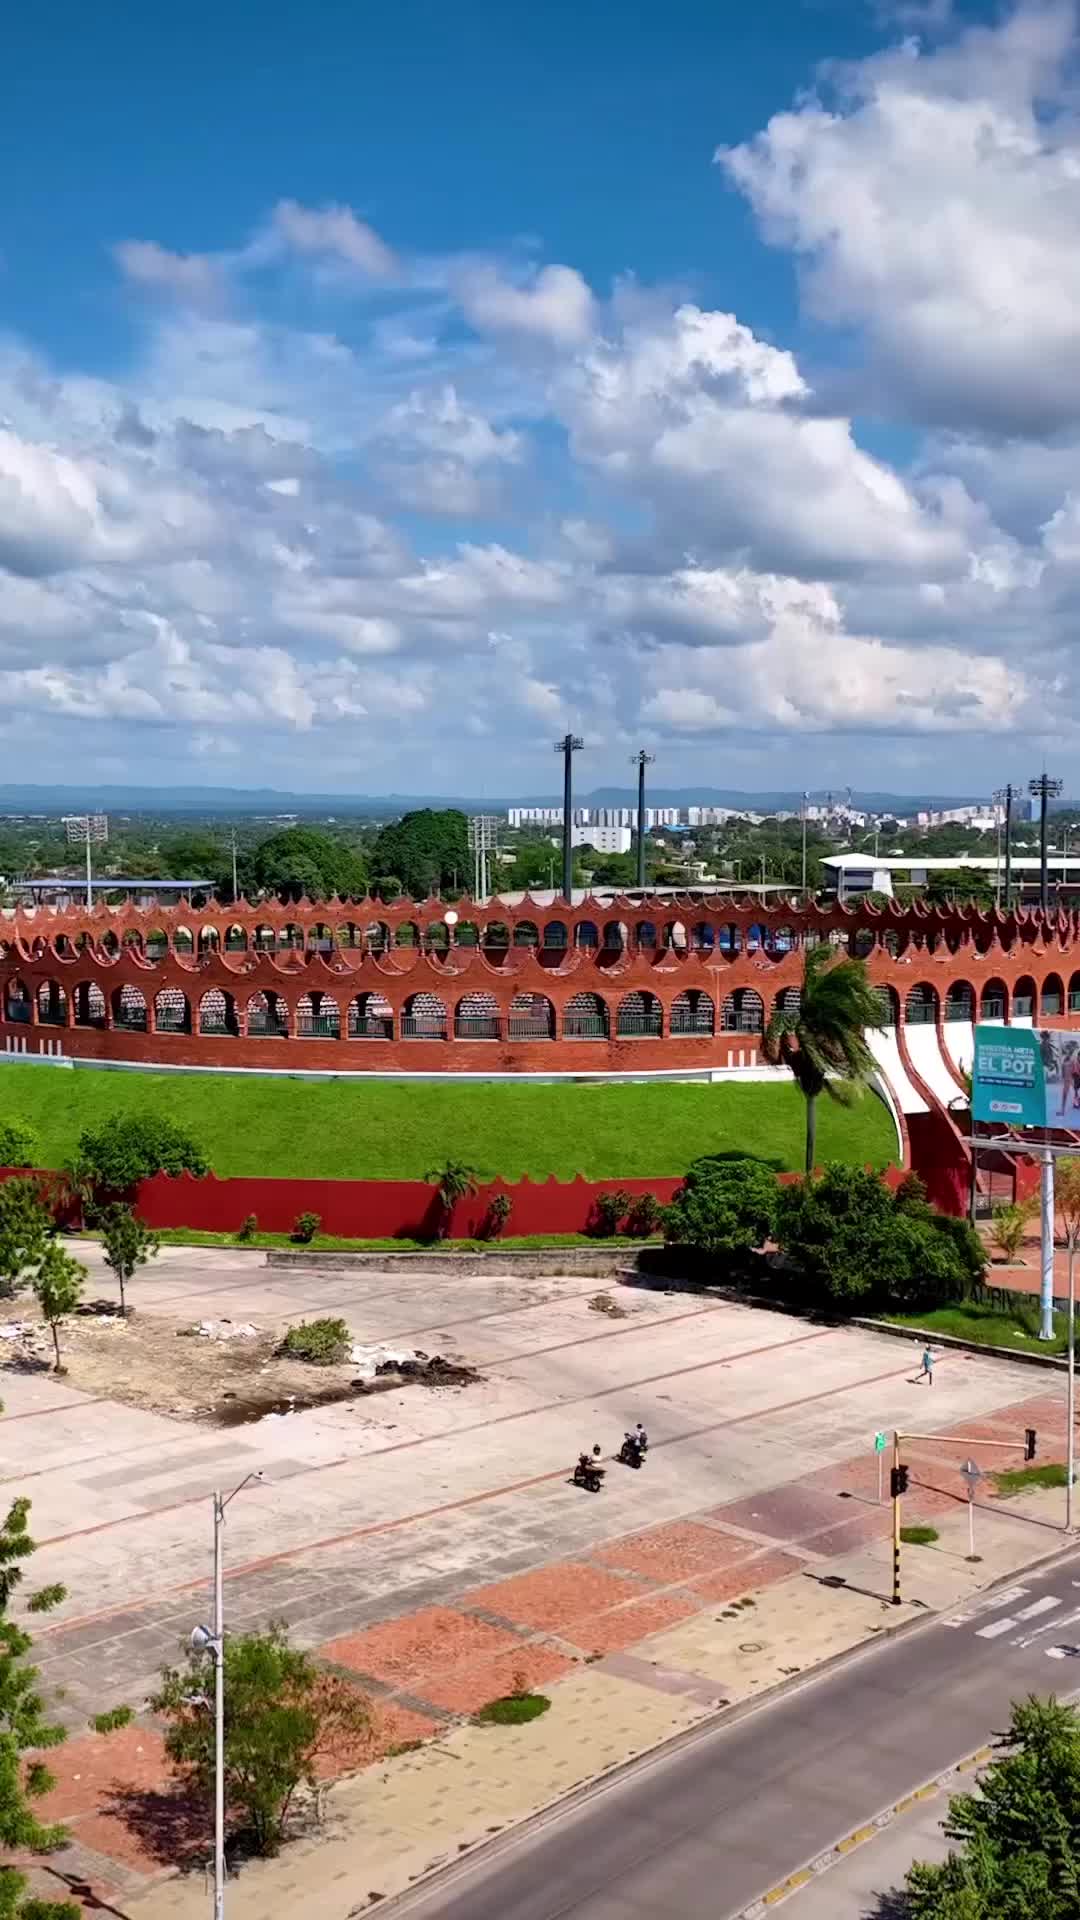 El Estadio Jaime Morón León Estadio and the Plaza de Toros in Cartagena, Colombia 🏟️🇨🇴
.
.
.
.
.
#cartagena#cartagenadeindias#colombia#cartagenacolombia#cartagenacity#estadiojaimemoron#visitcartagena#visitcolombia#travel#worldwalkerz